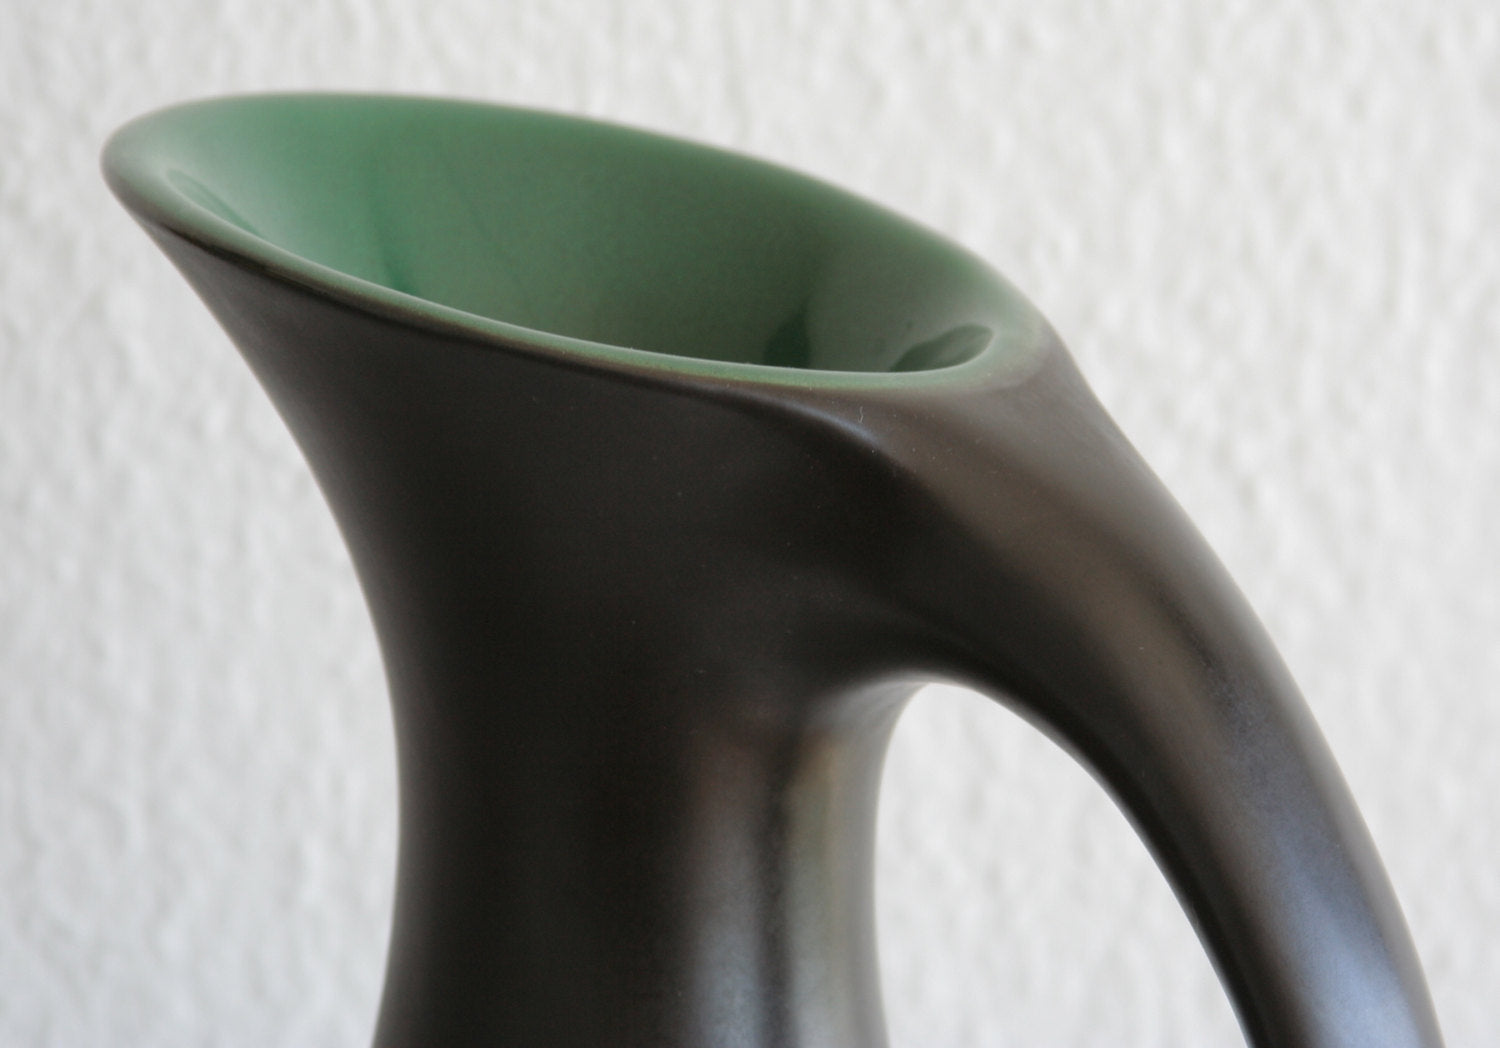 MØRKØV Monumental Black Green Glazed Ceramic Floor Vase Mollaris.com 